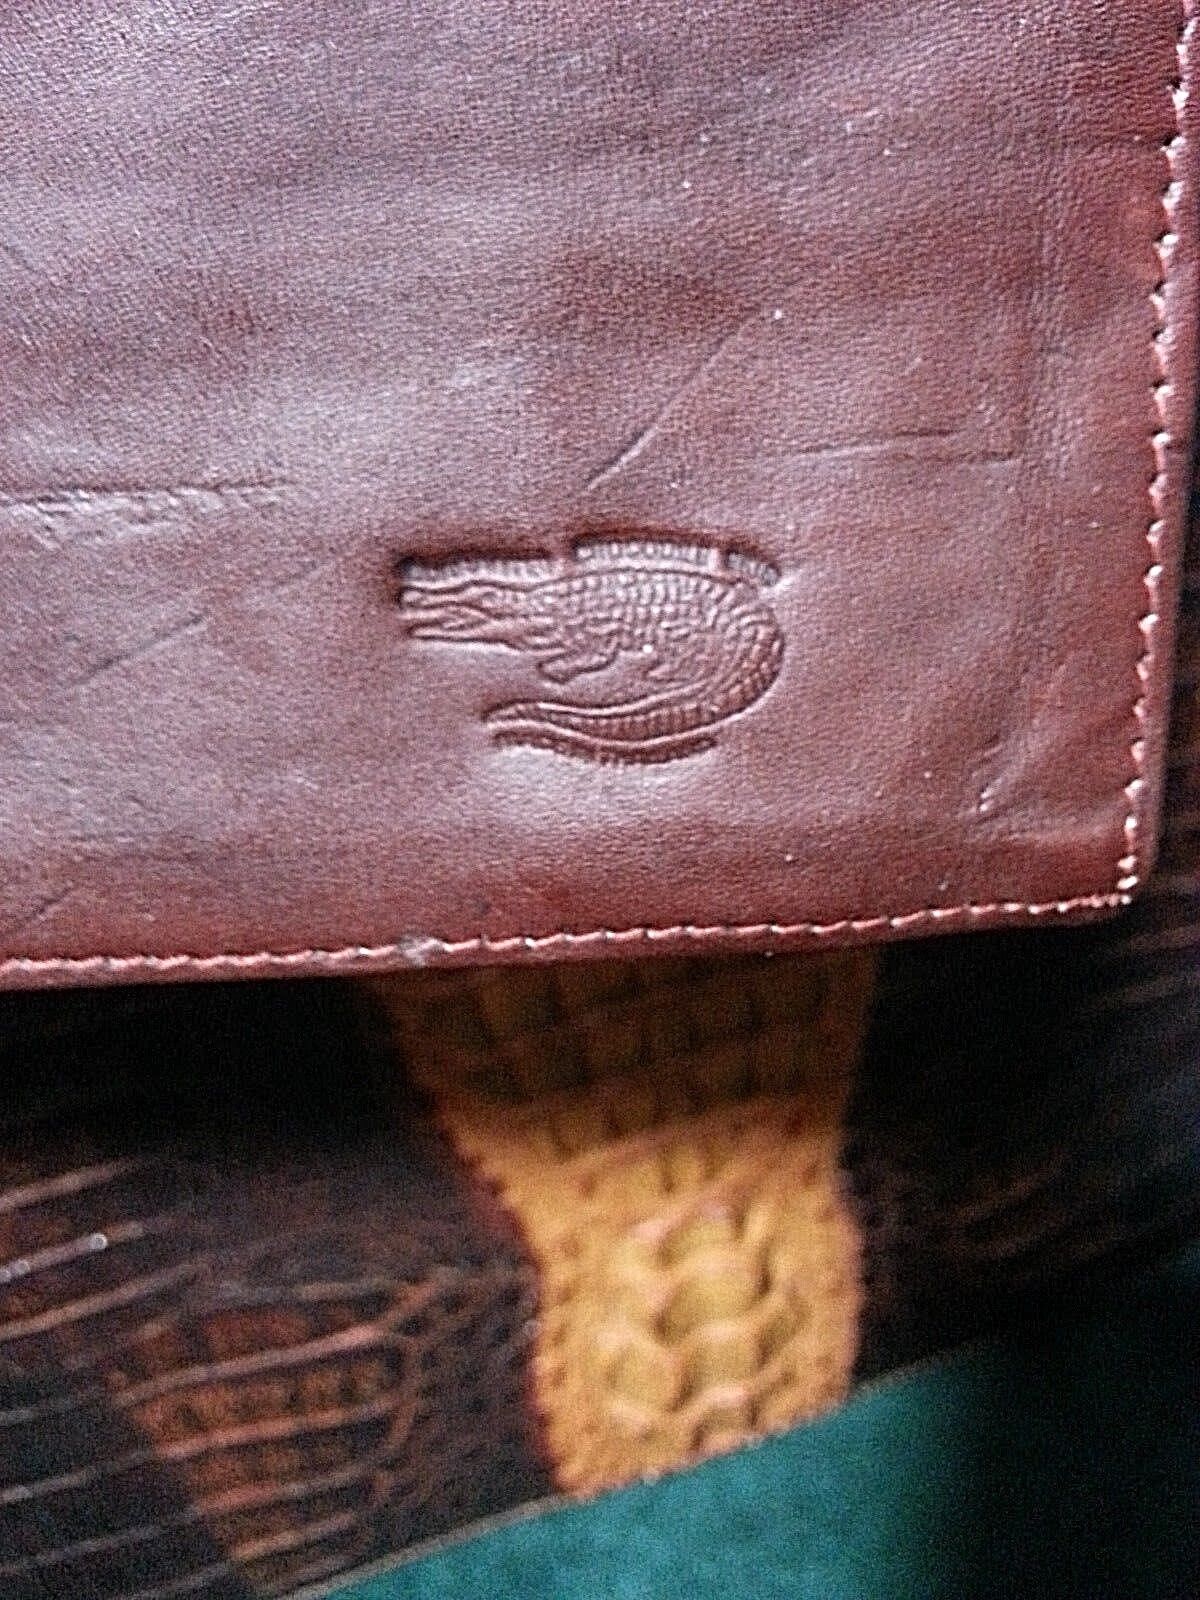 Vintage Genuine Crocodile Convertible Handbag & Wallet Unbranded - фотография #5